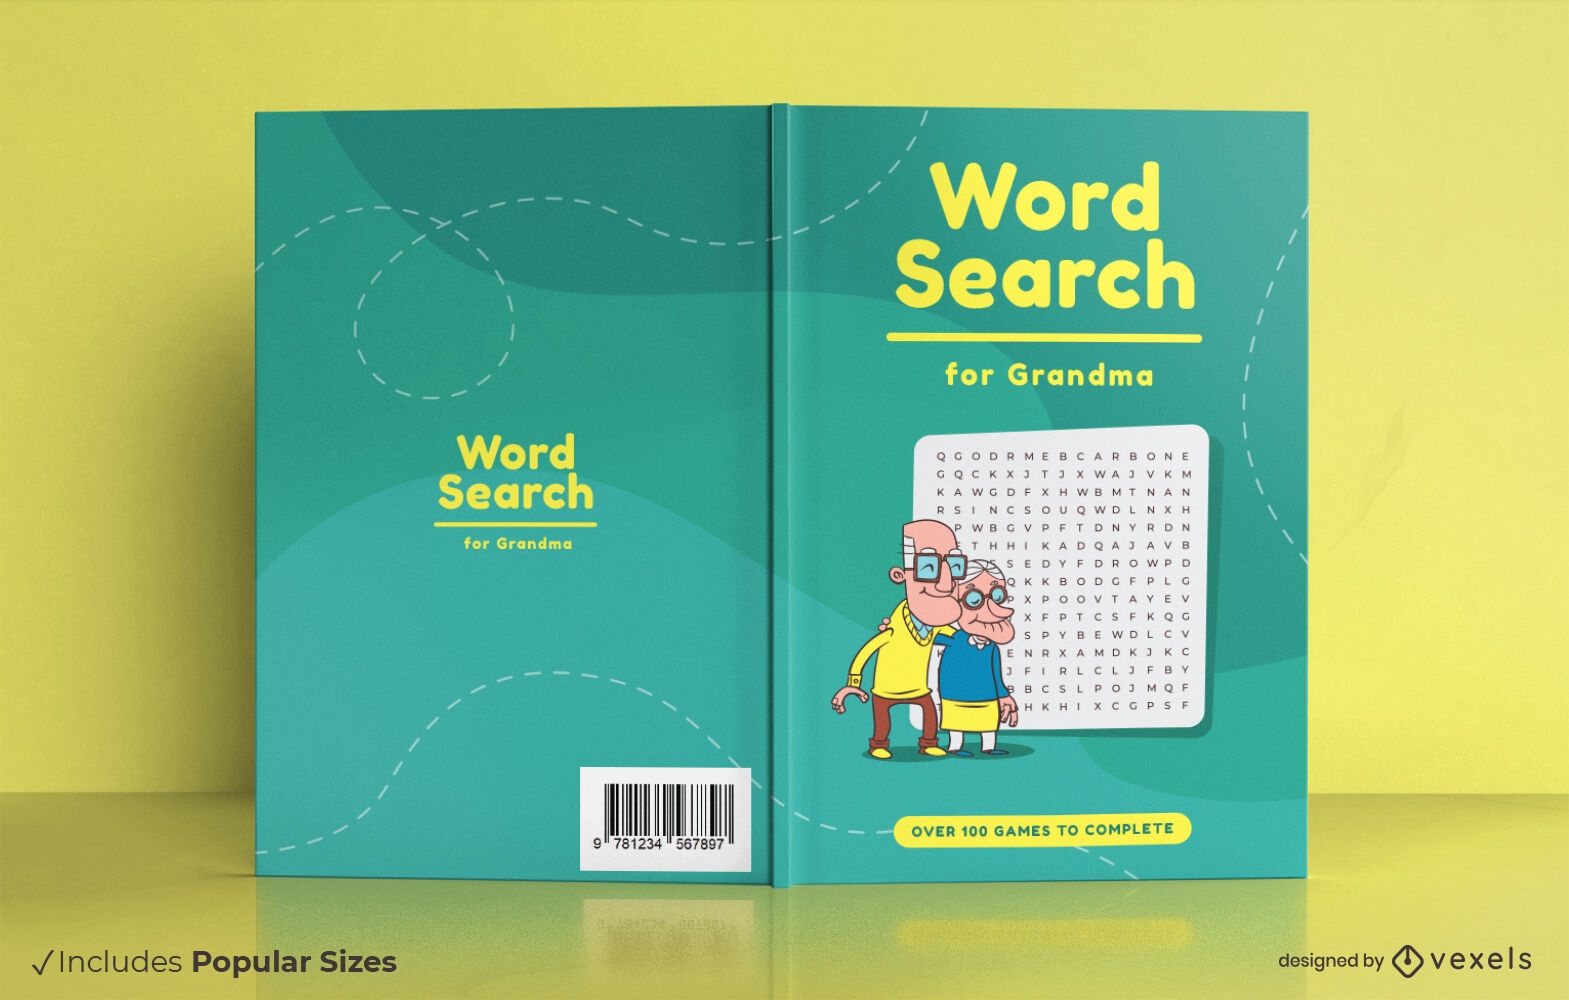 Word search for grandma book cover design